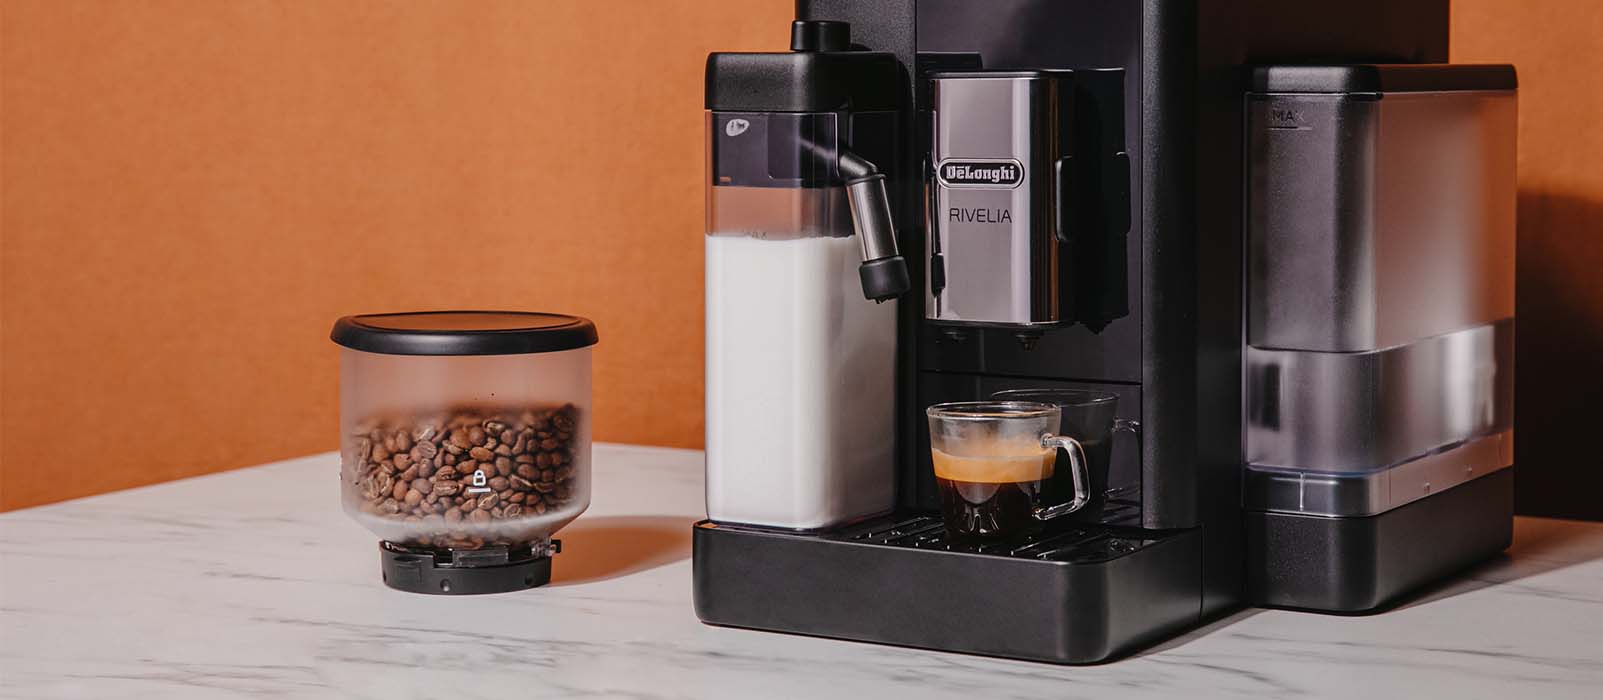 De'Longhi machine à café Pichet à lait pour la gamme Perfecta